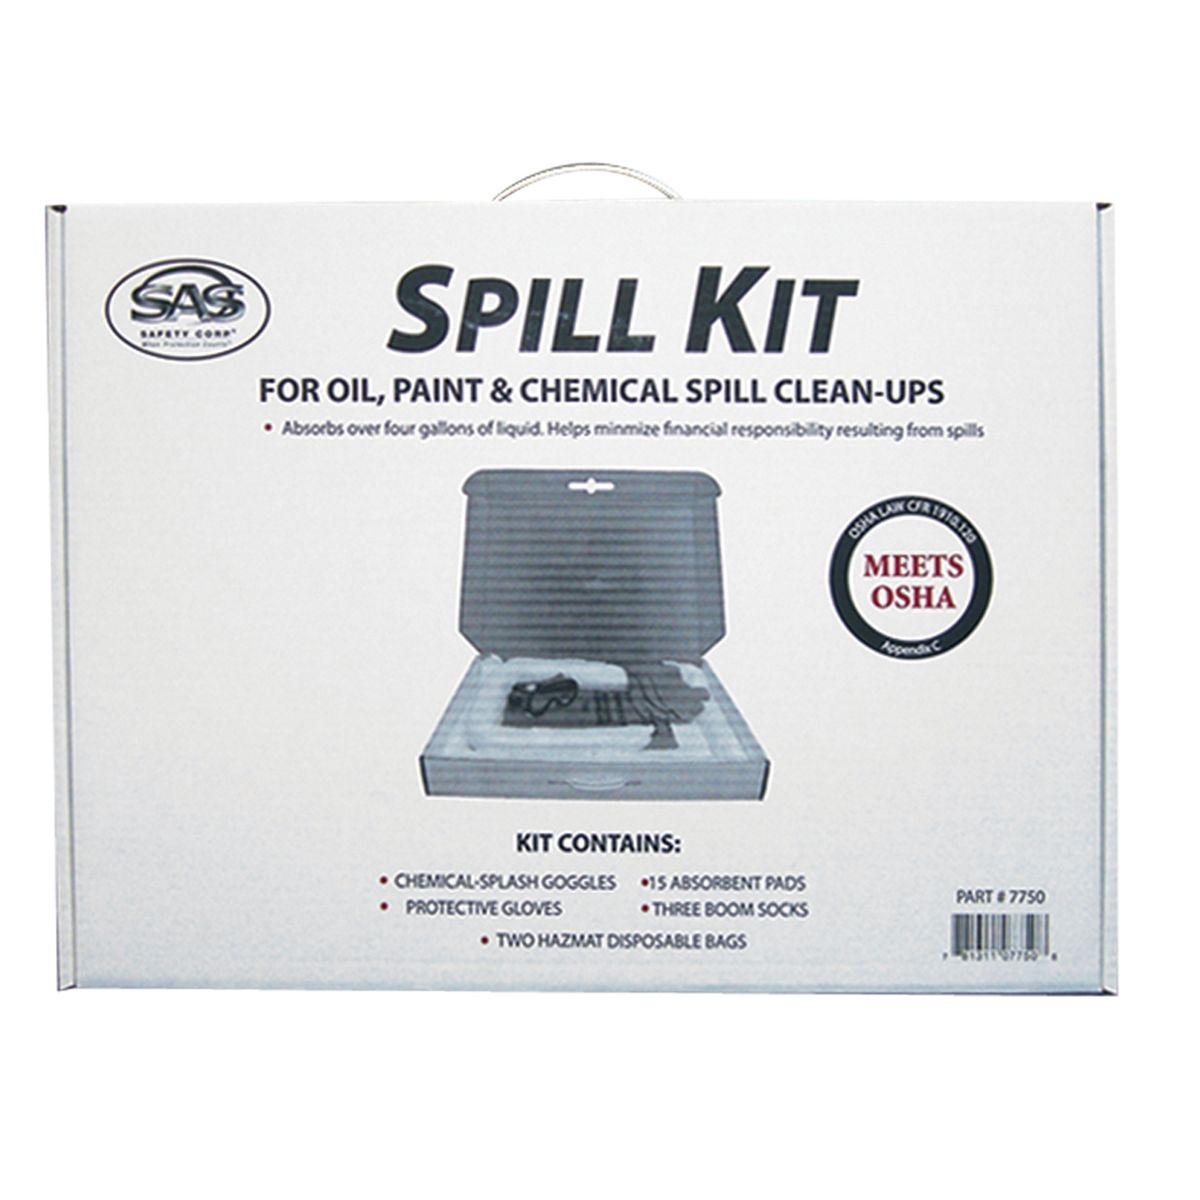 Emergency Response Spill Kit